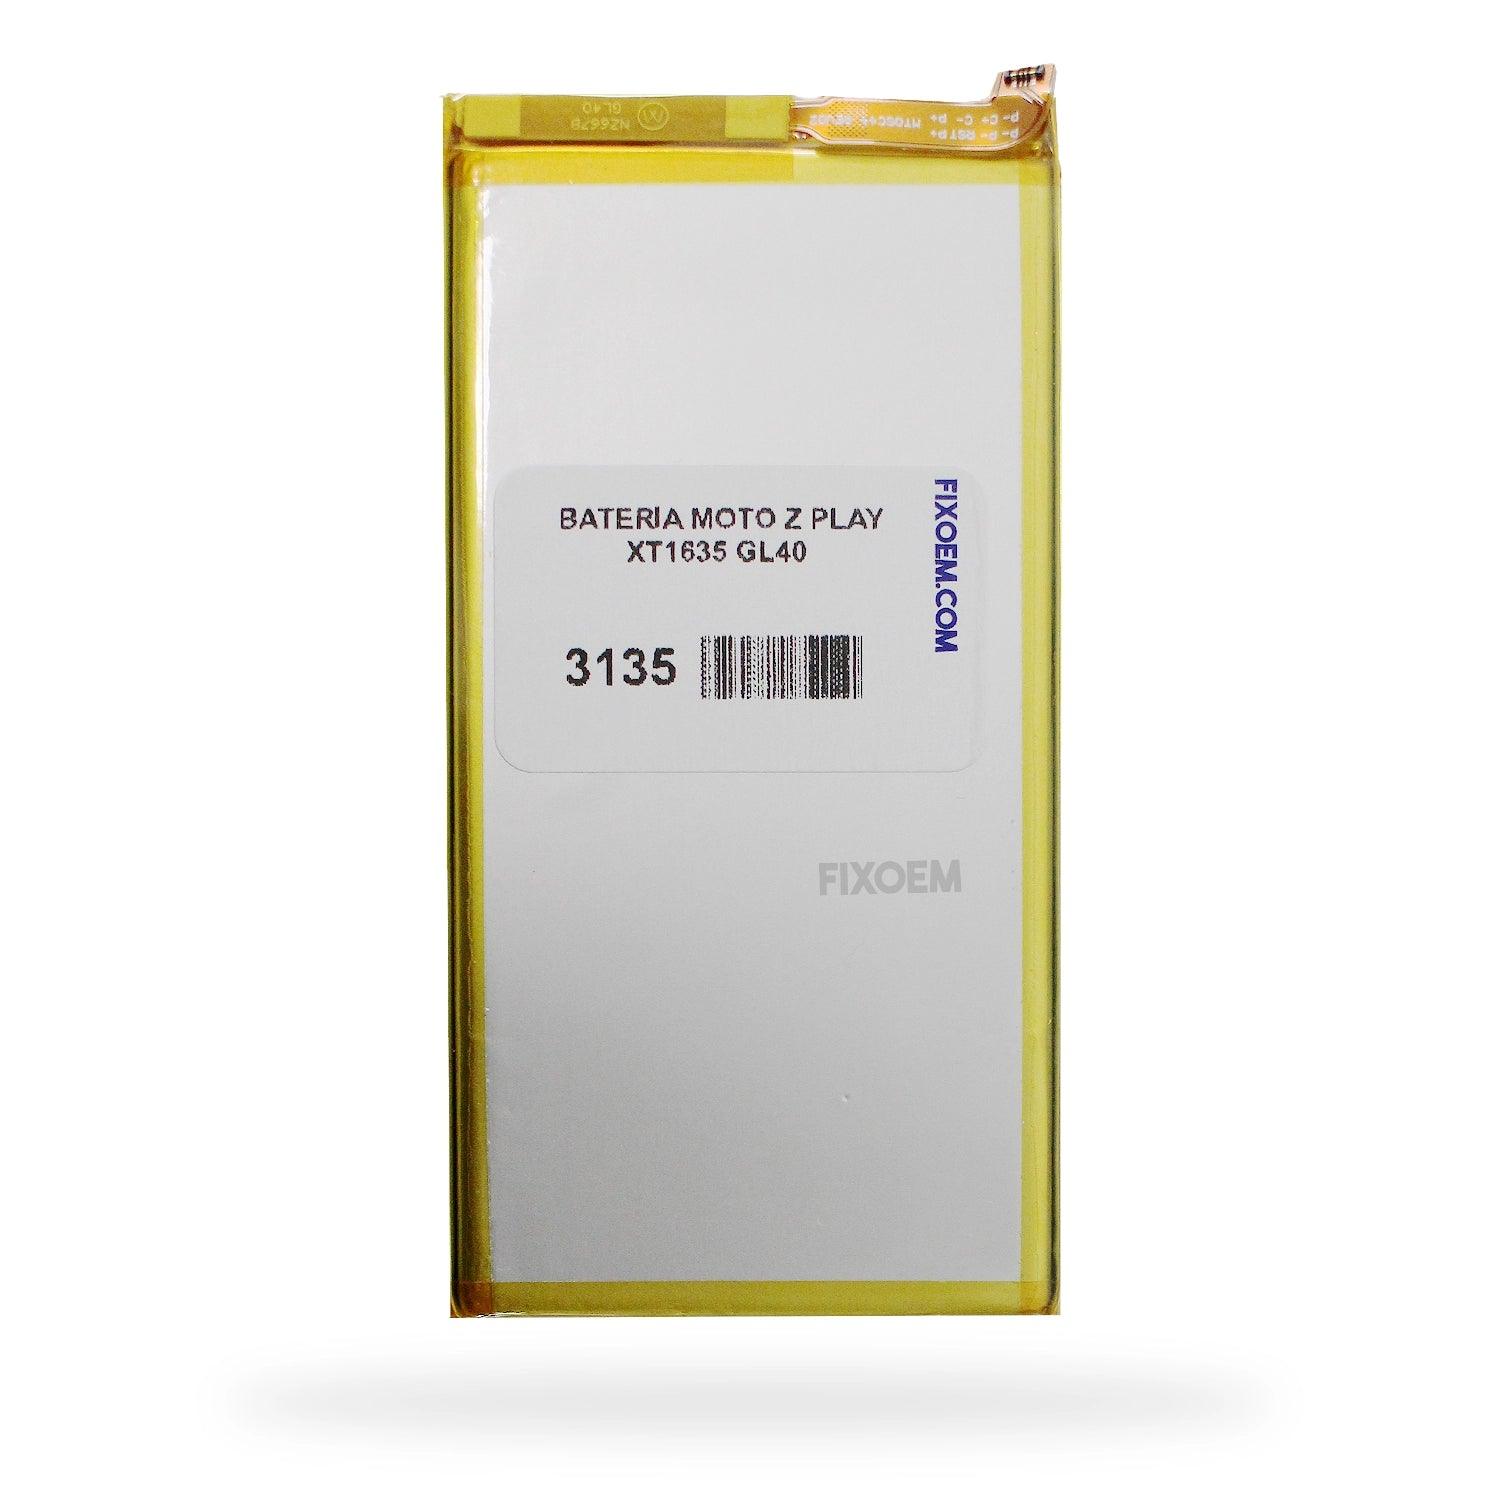 Bateria Moto Z Play Xt1635 Gl40 a solo $ 110.00 Refaccion y puestos celulares, refurbish y microelectronica.- FixOEM